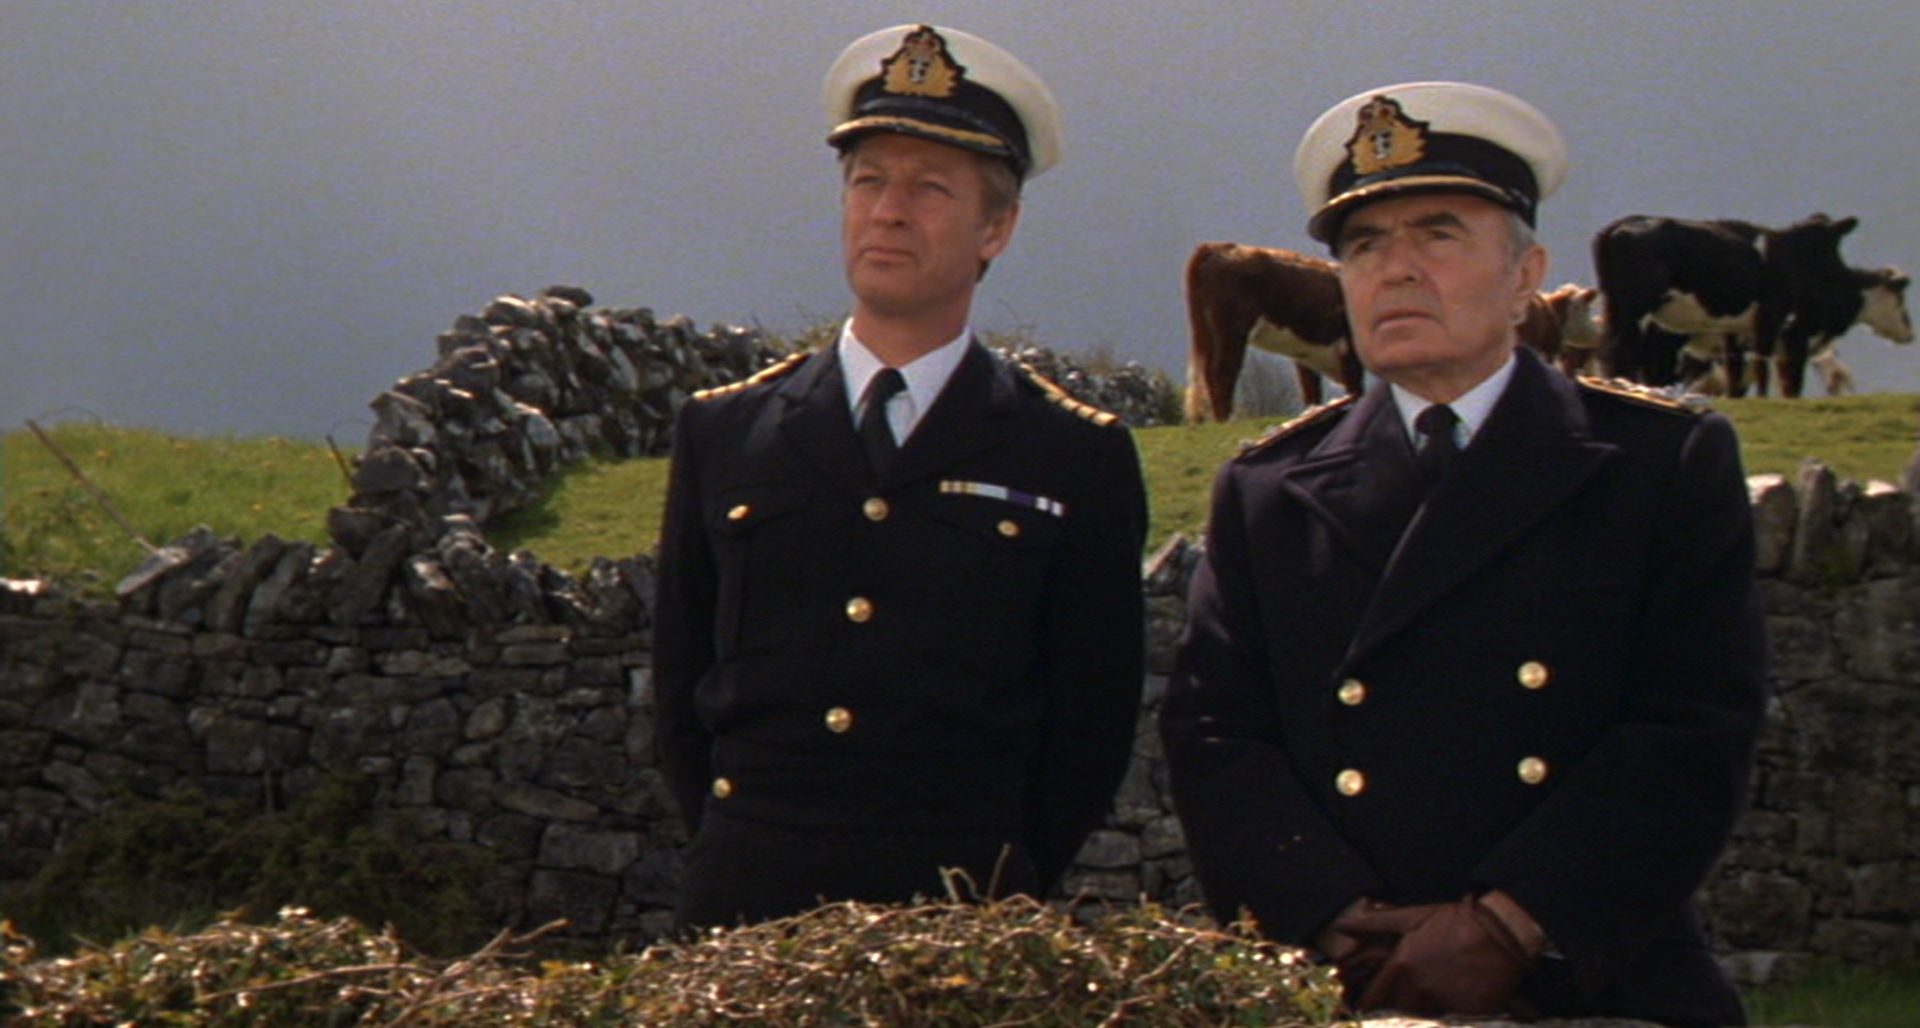 Zwei britische Marineoffiziere, von denen einen James Mason spielt, in ländlicher Umgebung mit alten, niedrigen Steinmauern, im Hintergrund weidet eine Kuhherde.